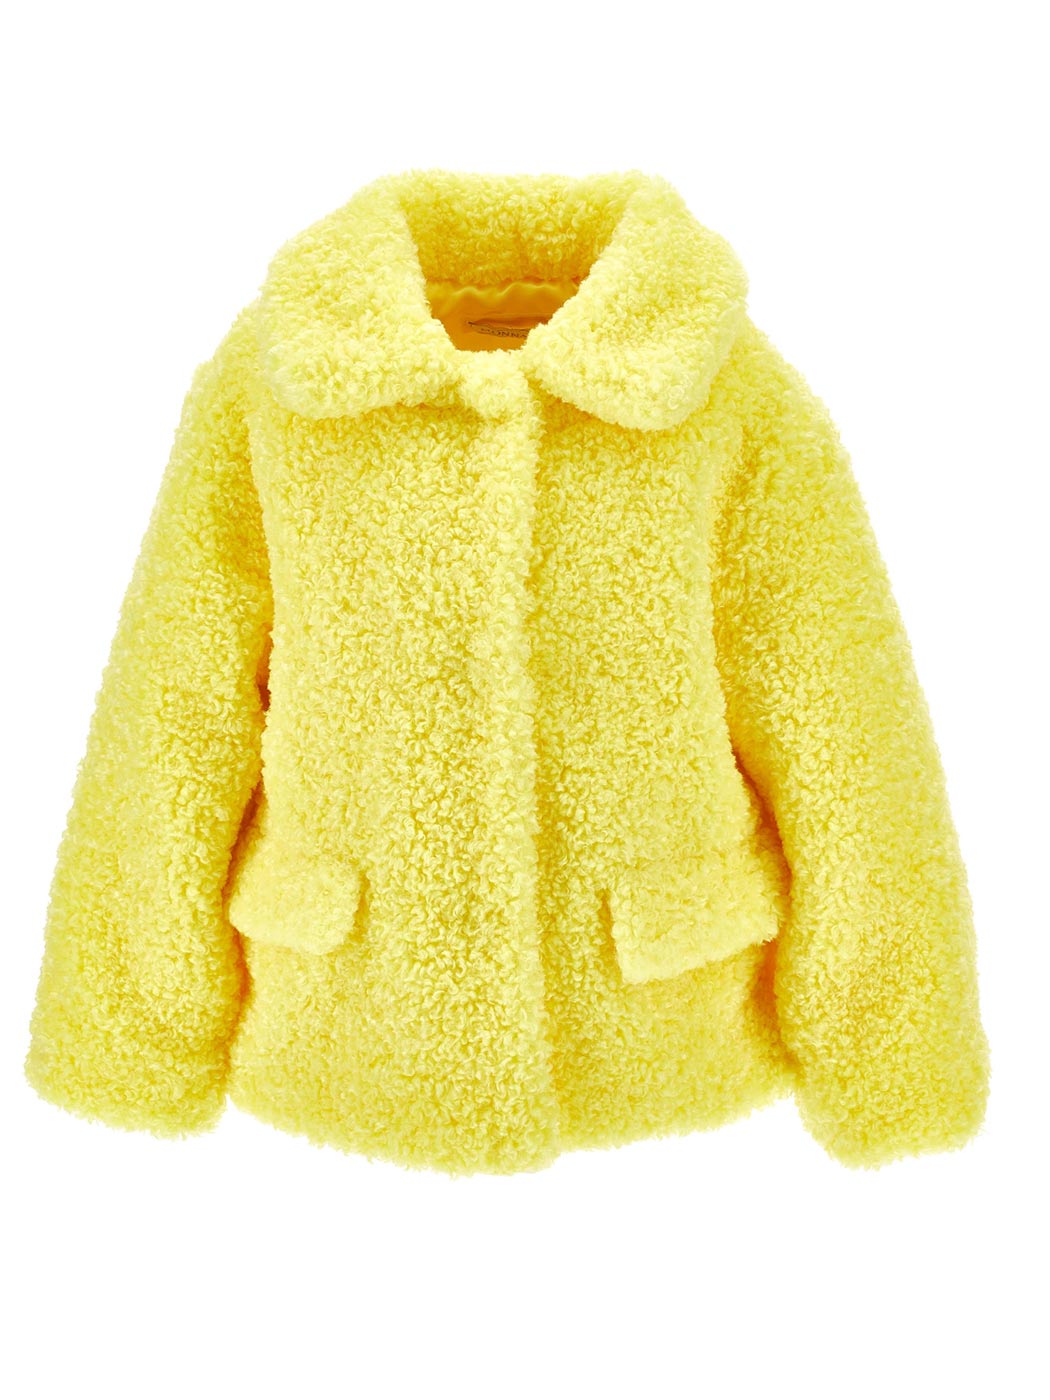 Yellow Plush jacket for girls-17B107